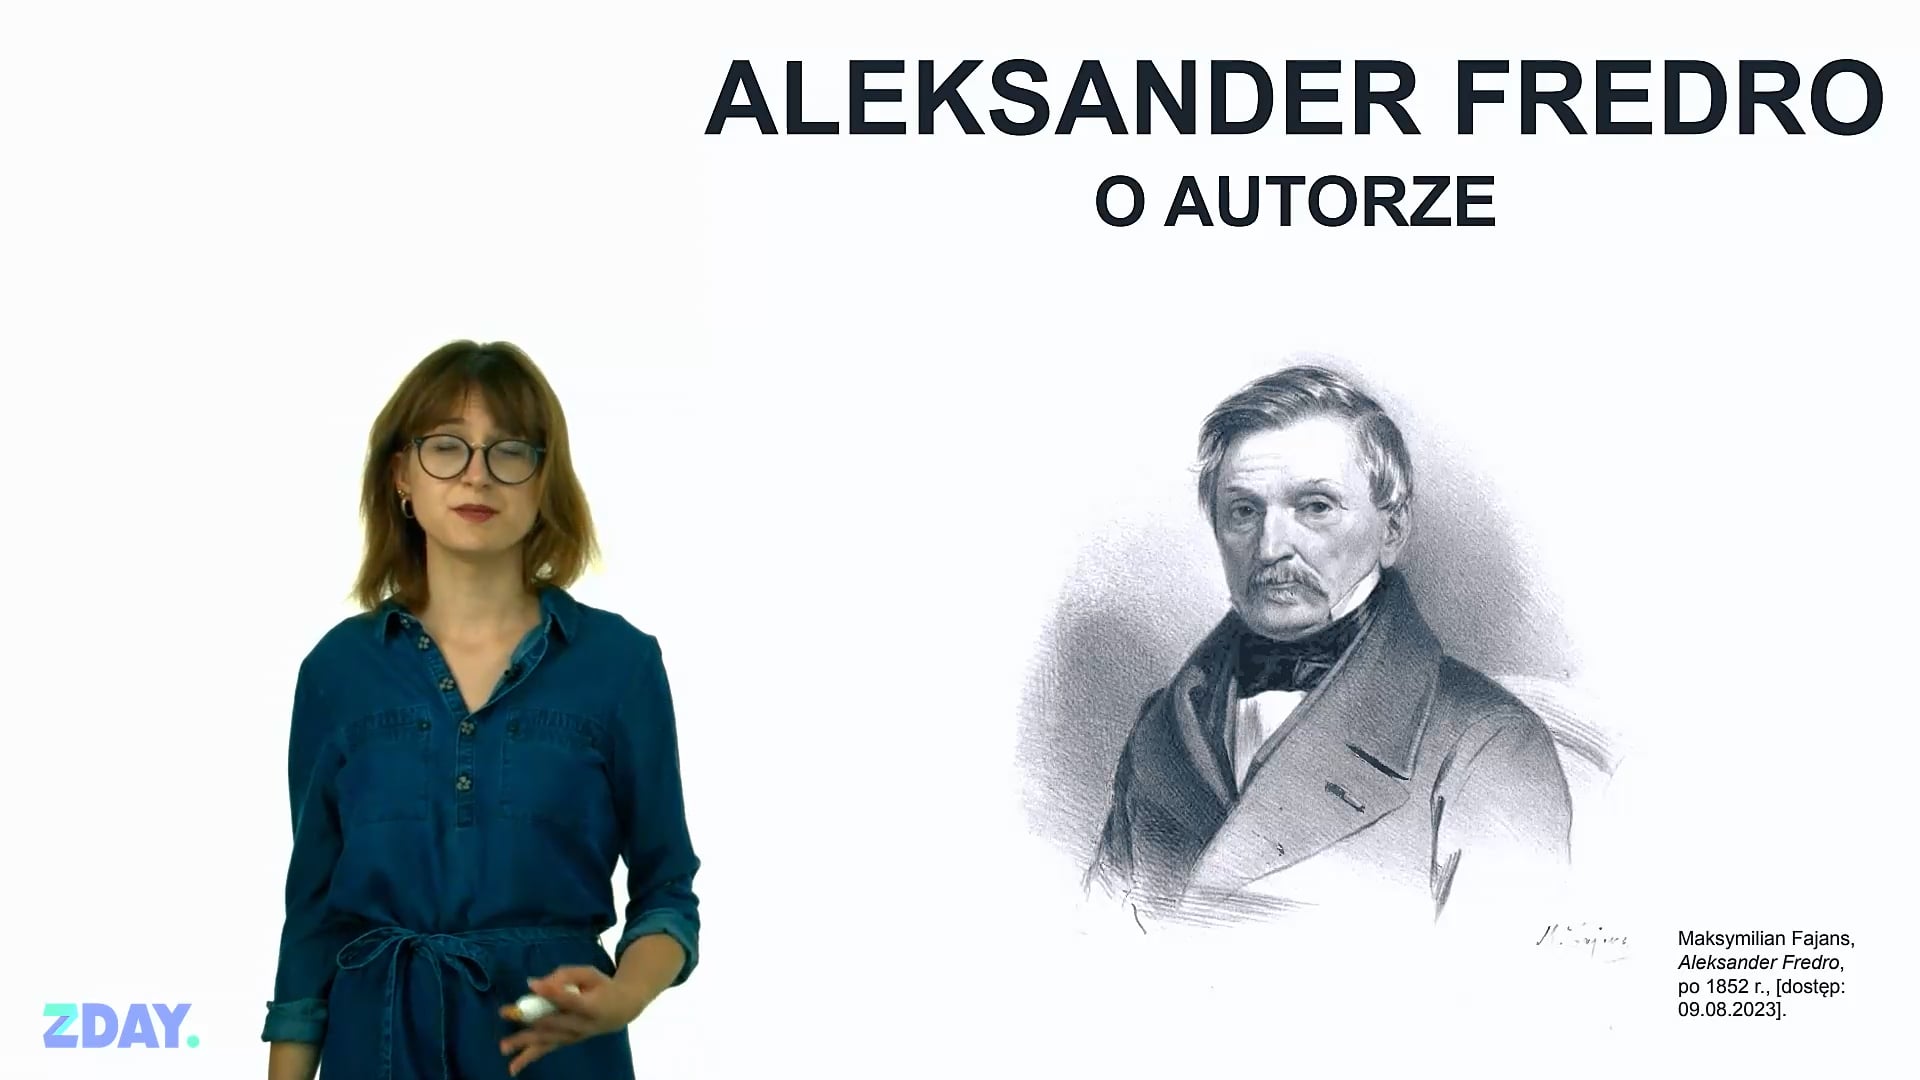 Miniaturka materiału wideo na temat: Aleksander Fredro – o autorze. Kliknij, aby obejrzeć materiał.